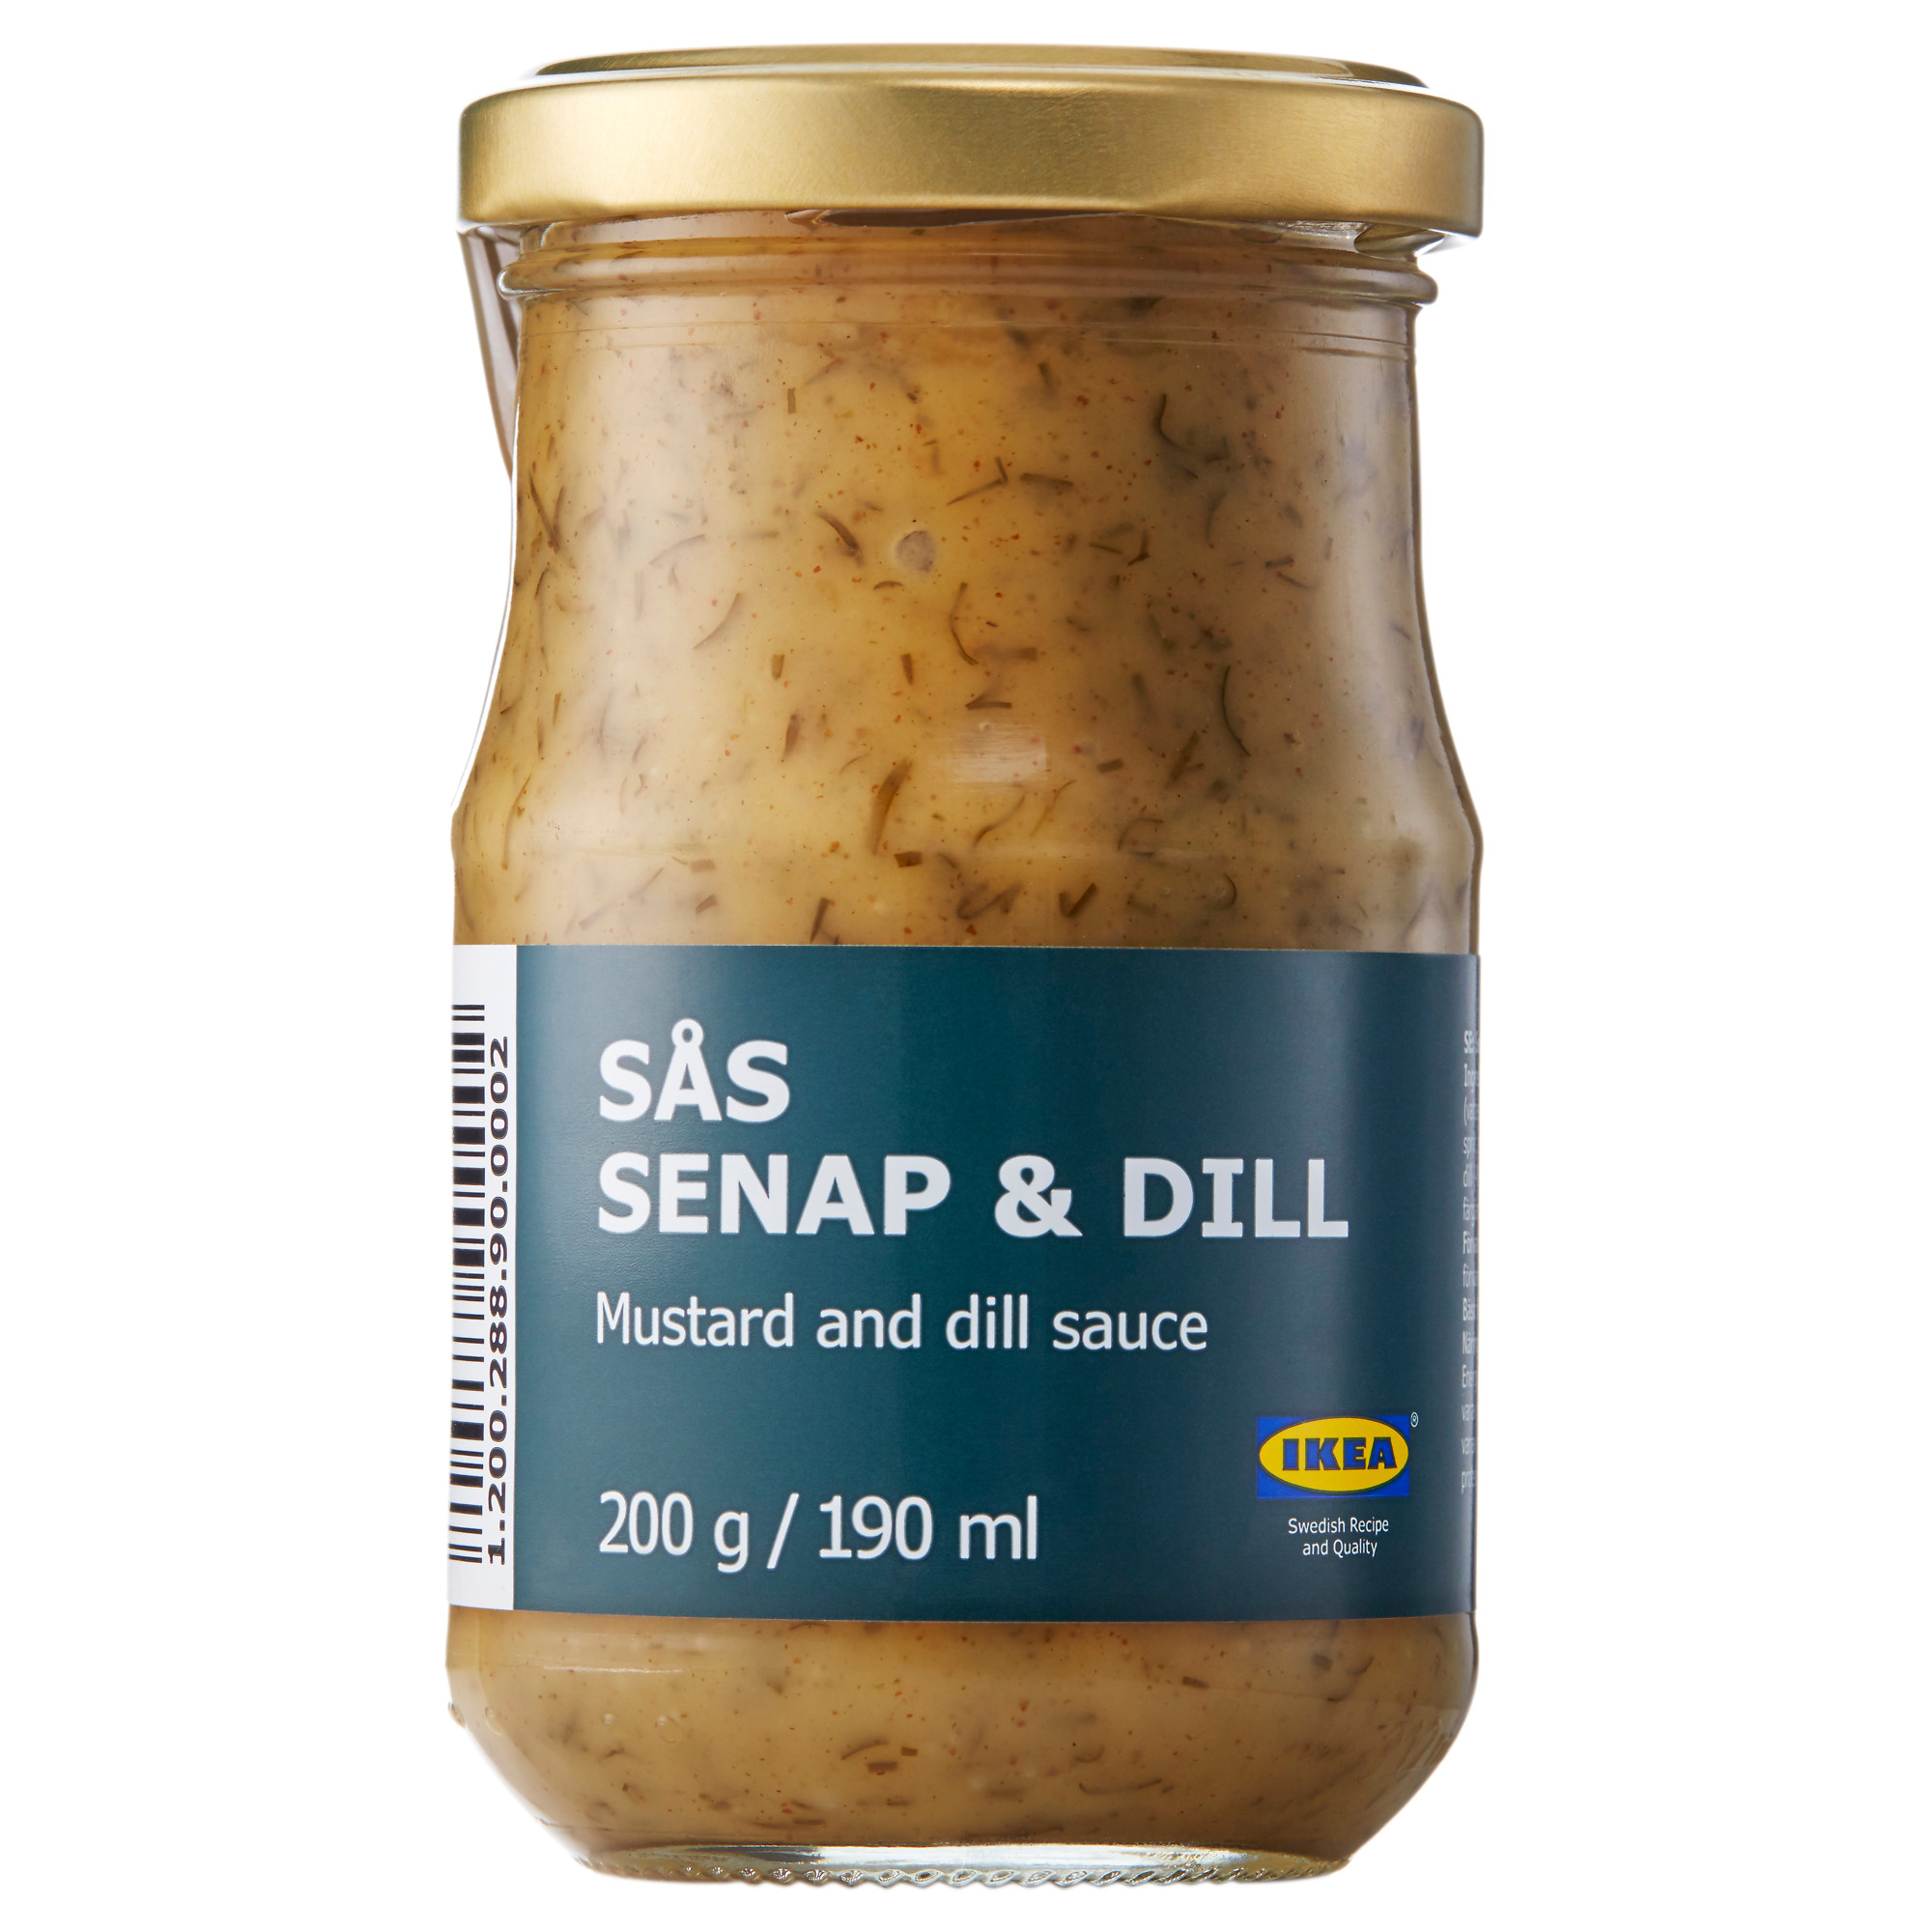 SÅS SENAP & DILL 芥末蒔蘿醬